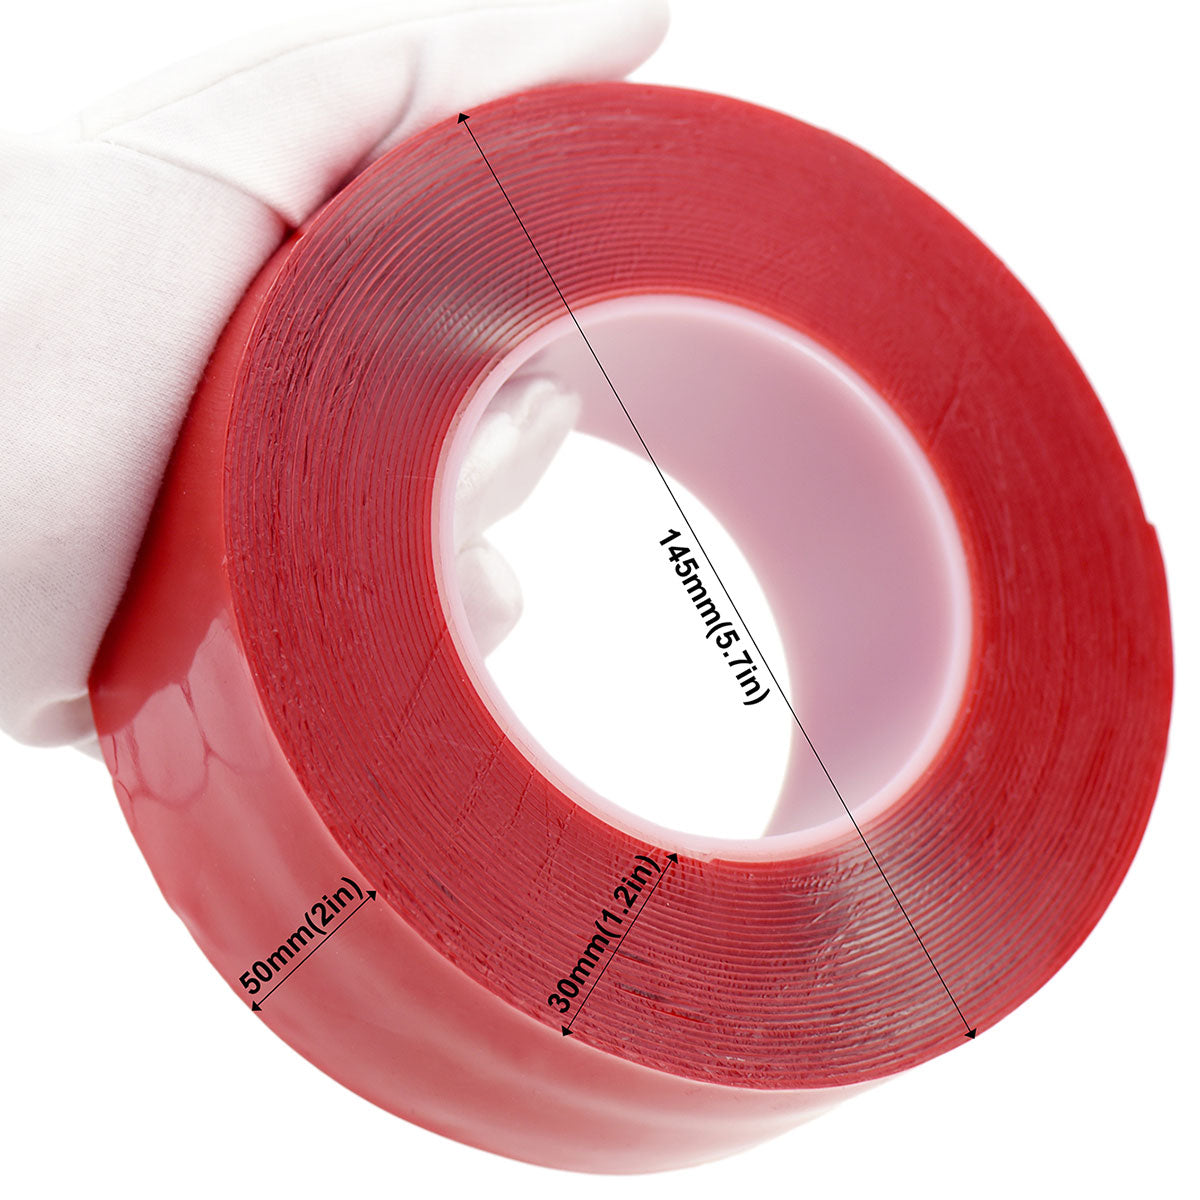  TUFF Tape Self Adhesive Repair Tape Strip 50cm